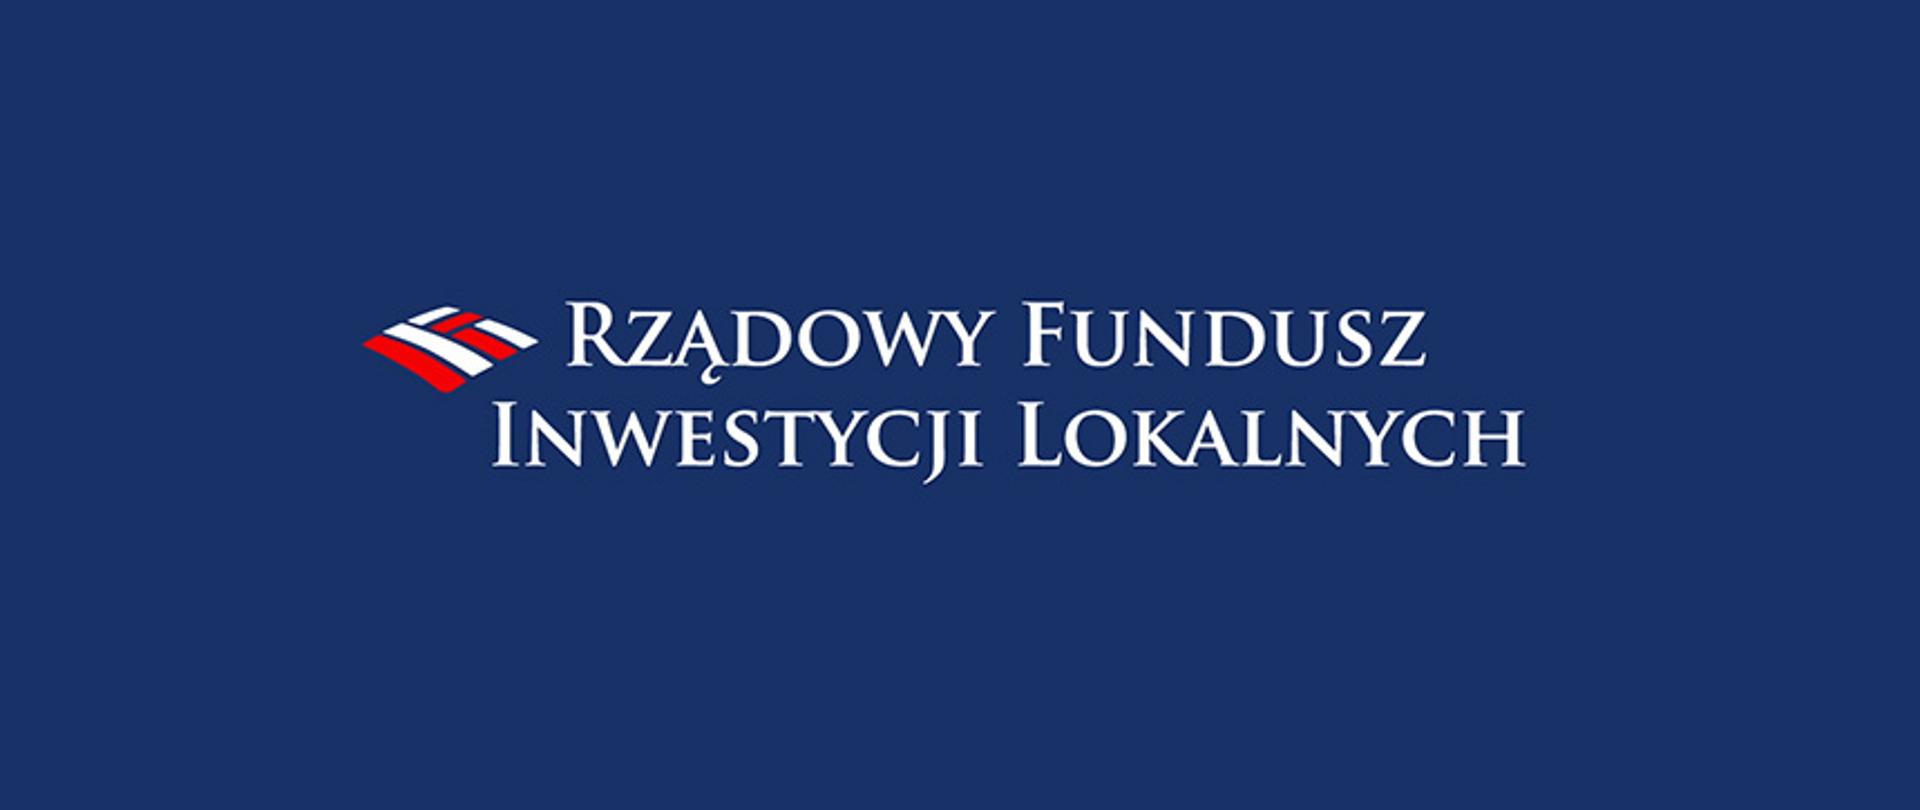 Rządowy Fundusz Inwestycji Lokalnych